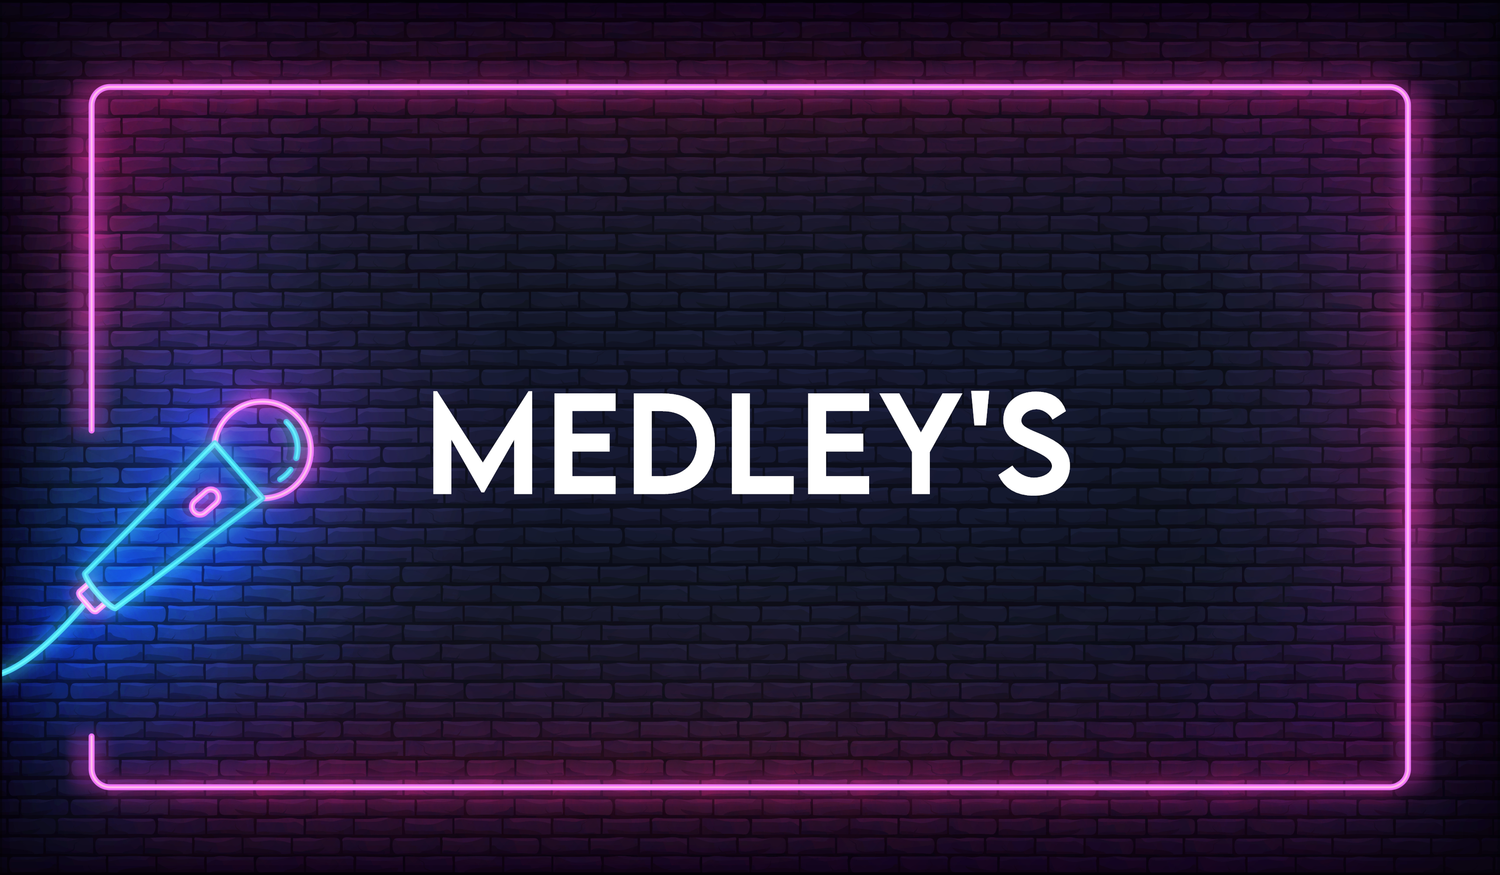 Medley's